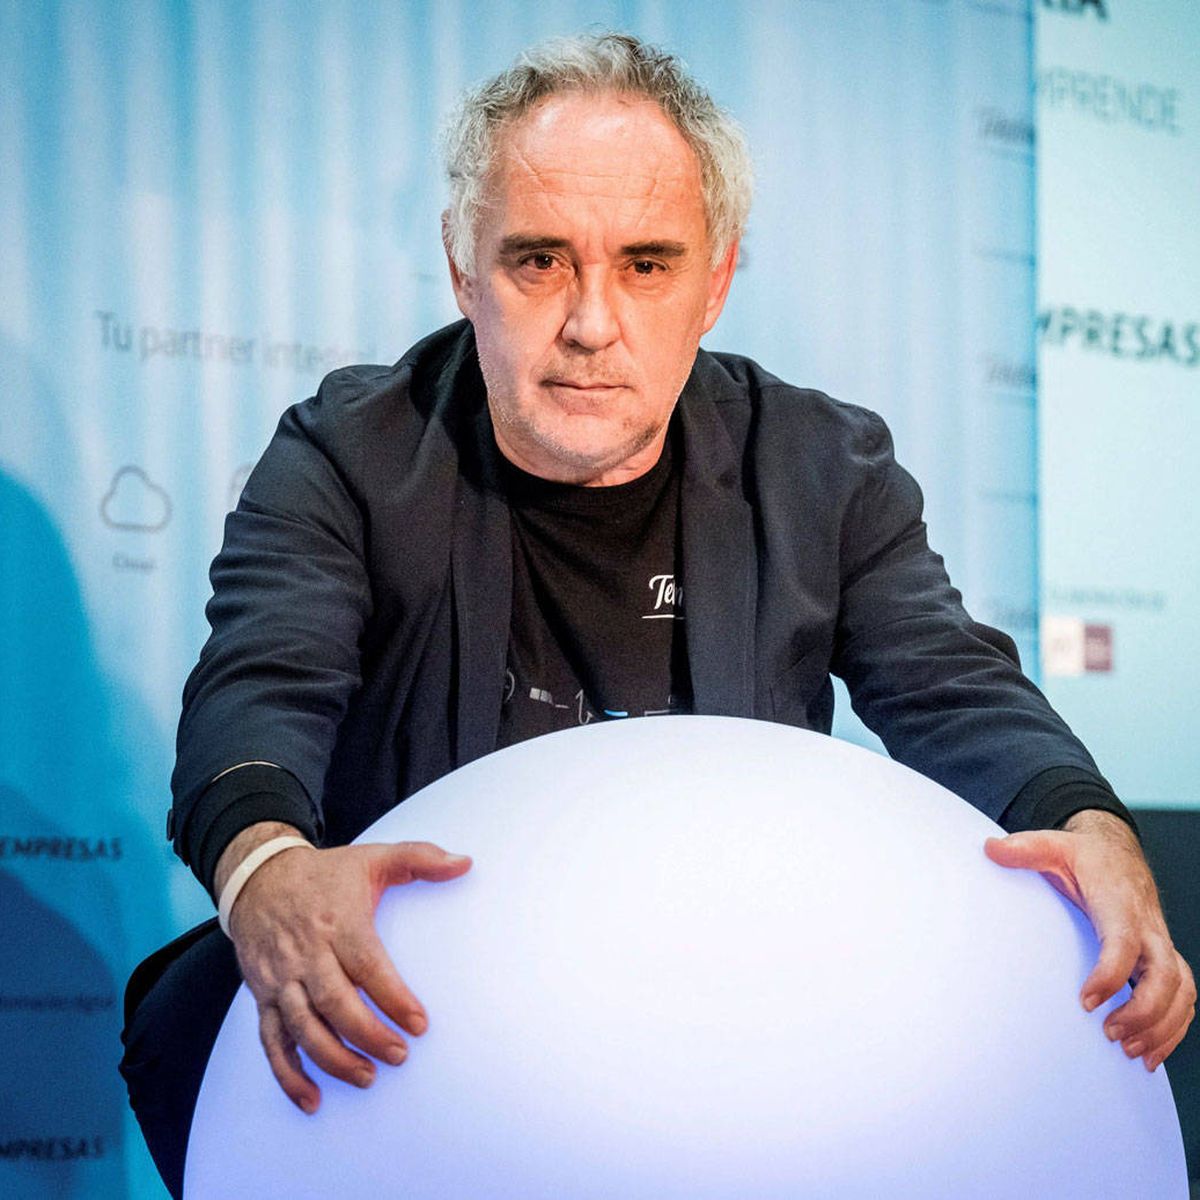 El sifón de cocina: cómo crear las espumas de Ferran Adrià